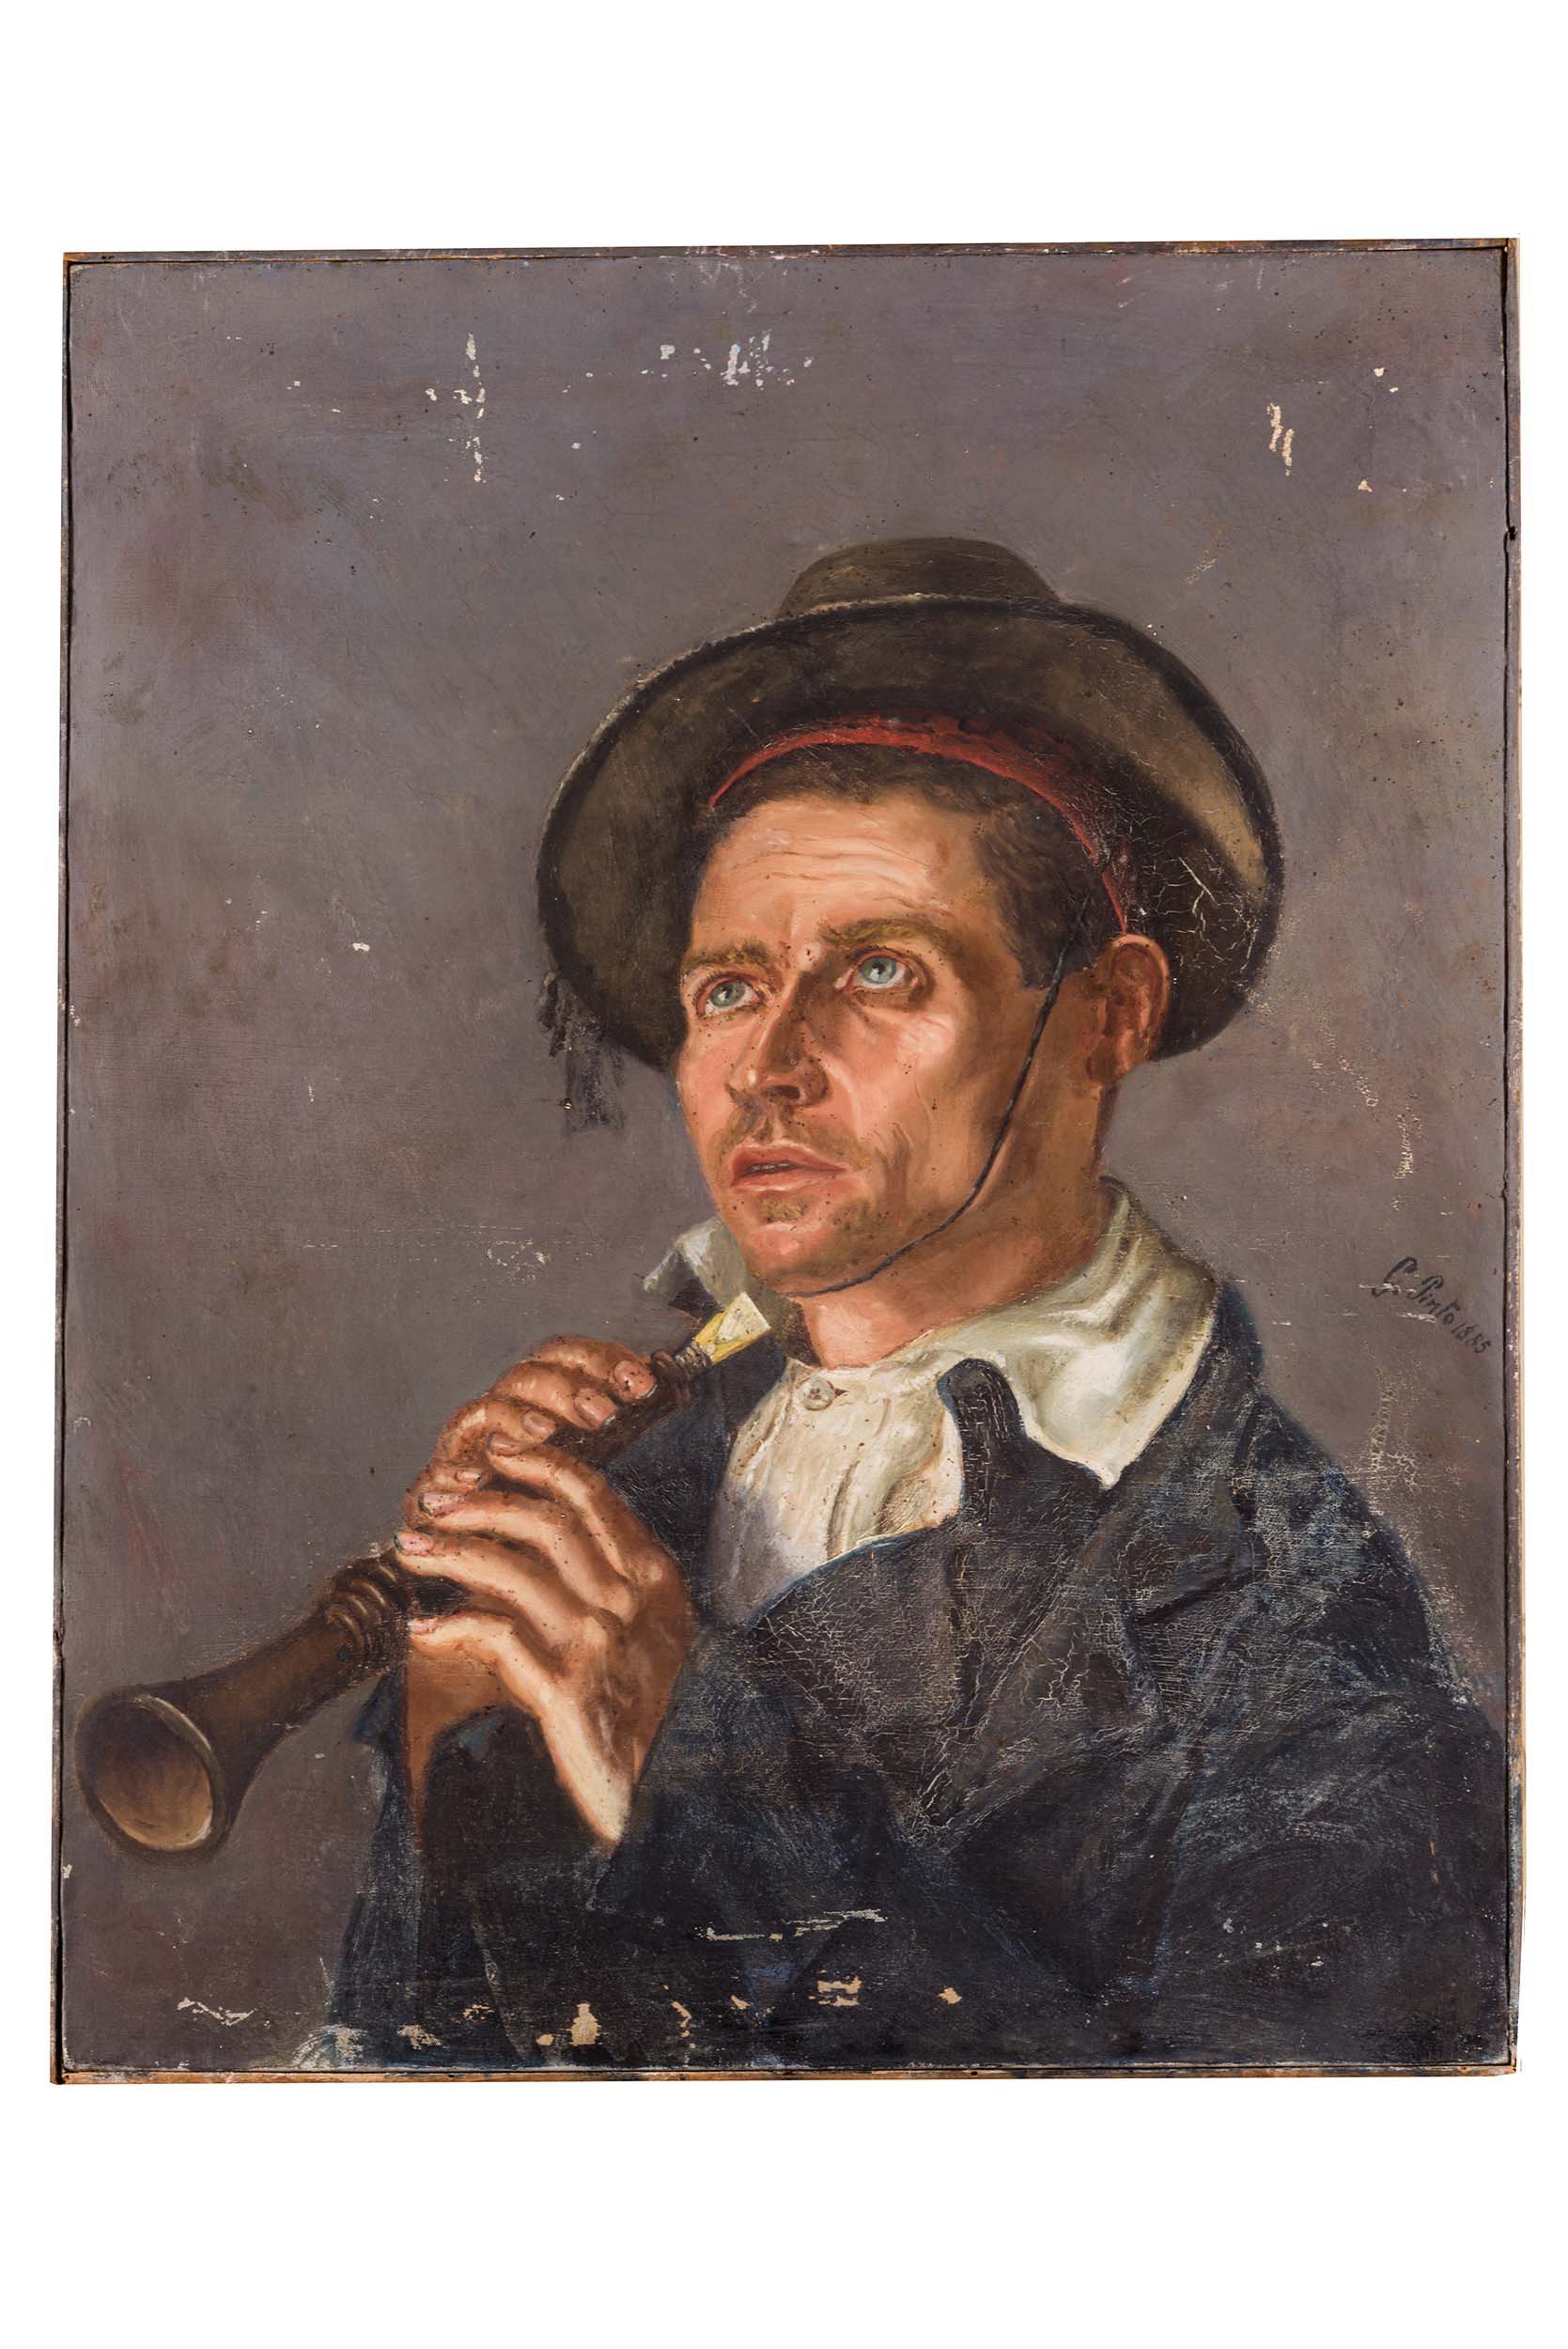 Ritratto di musico, ritratto (dipinto) di ignoto, ambito campano - ambito Italia meridionale (seconda metà XIX)